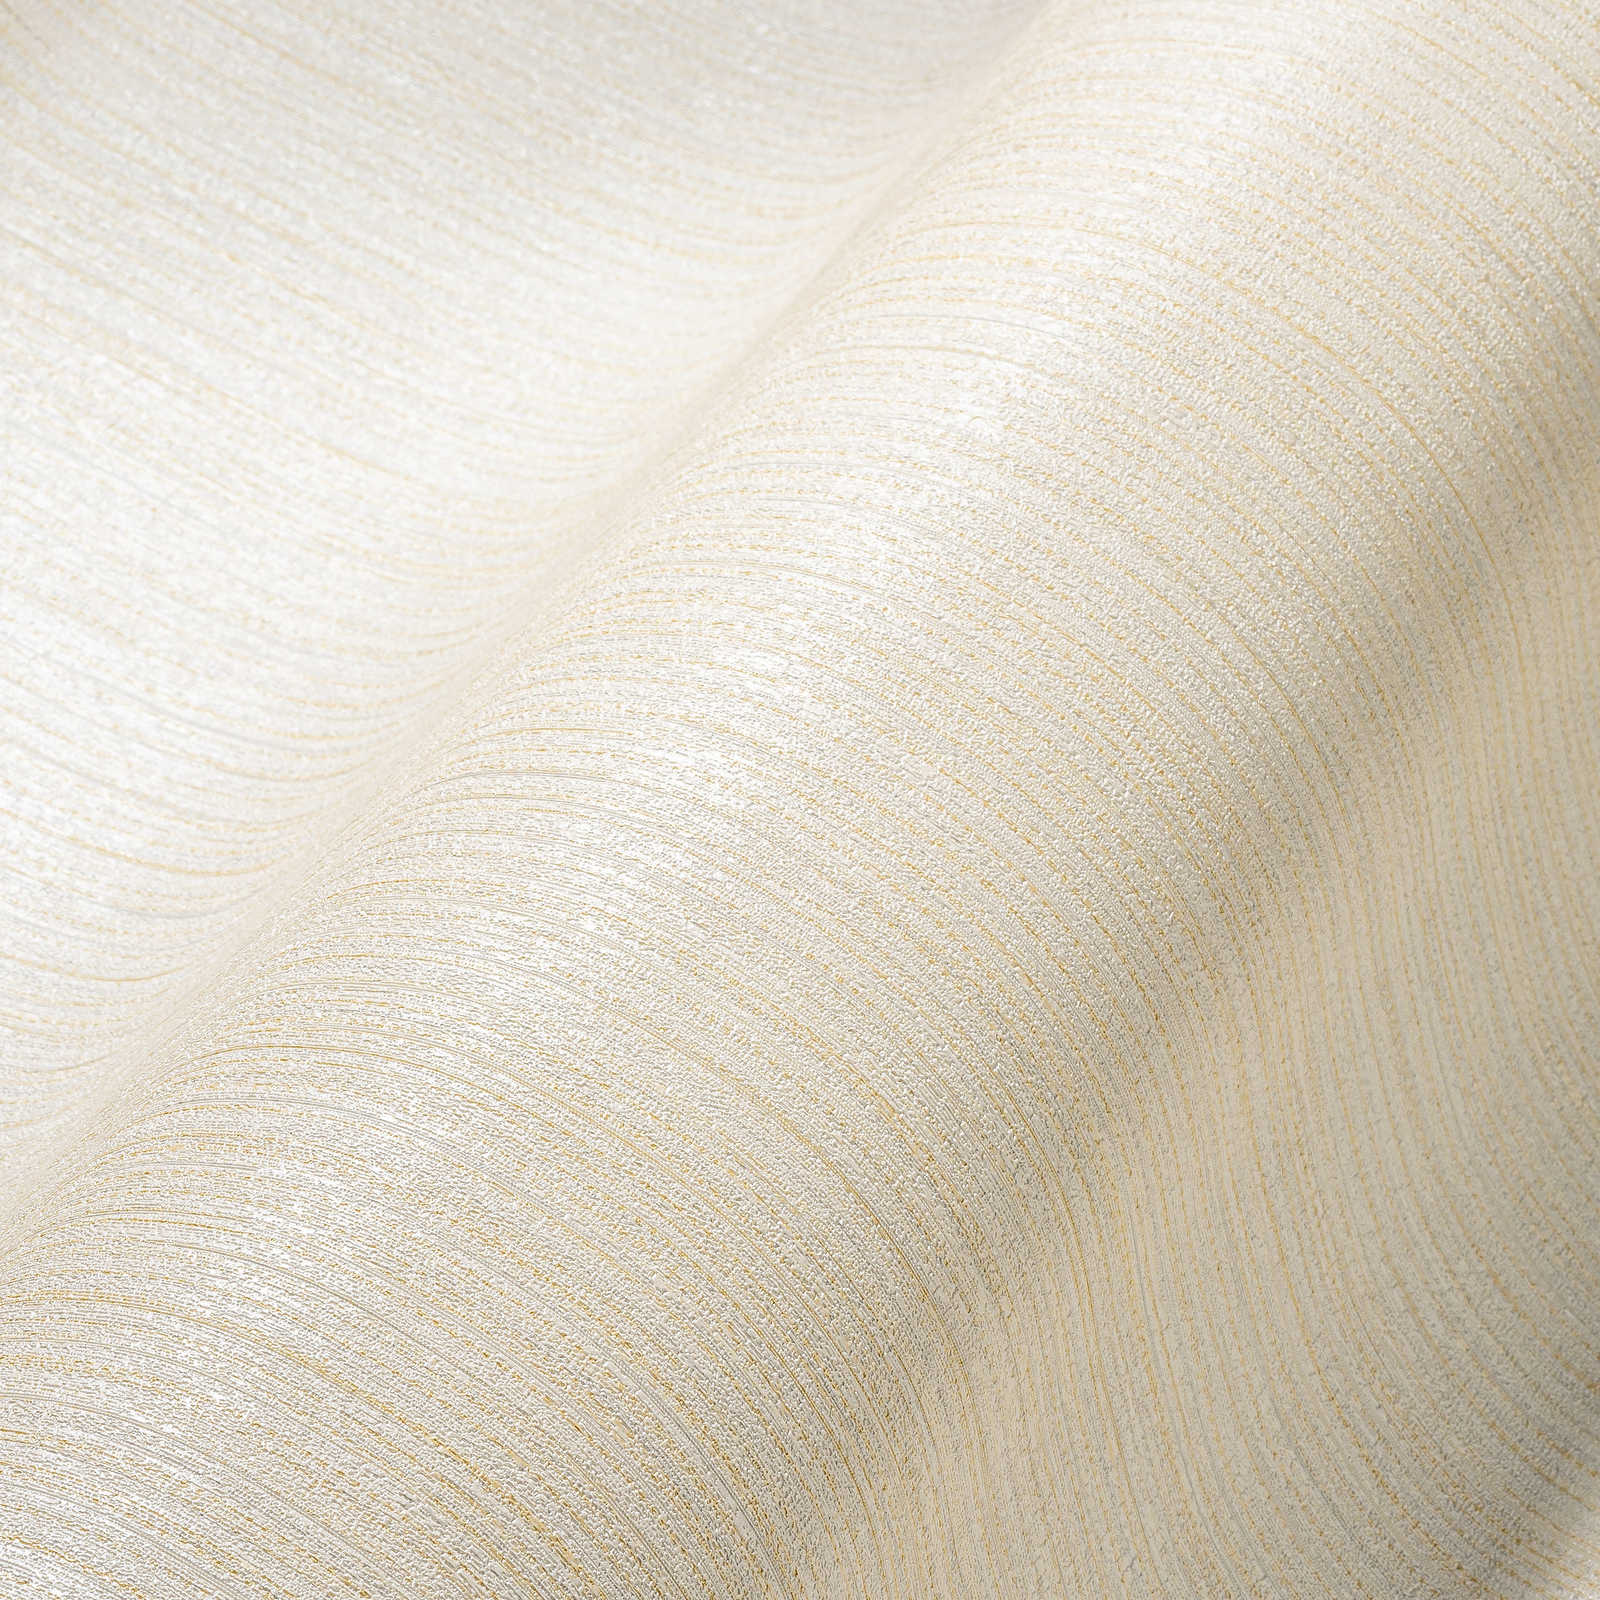             Papel pintado liso marfil con estructura de líneas - crema
        